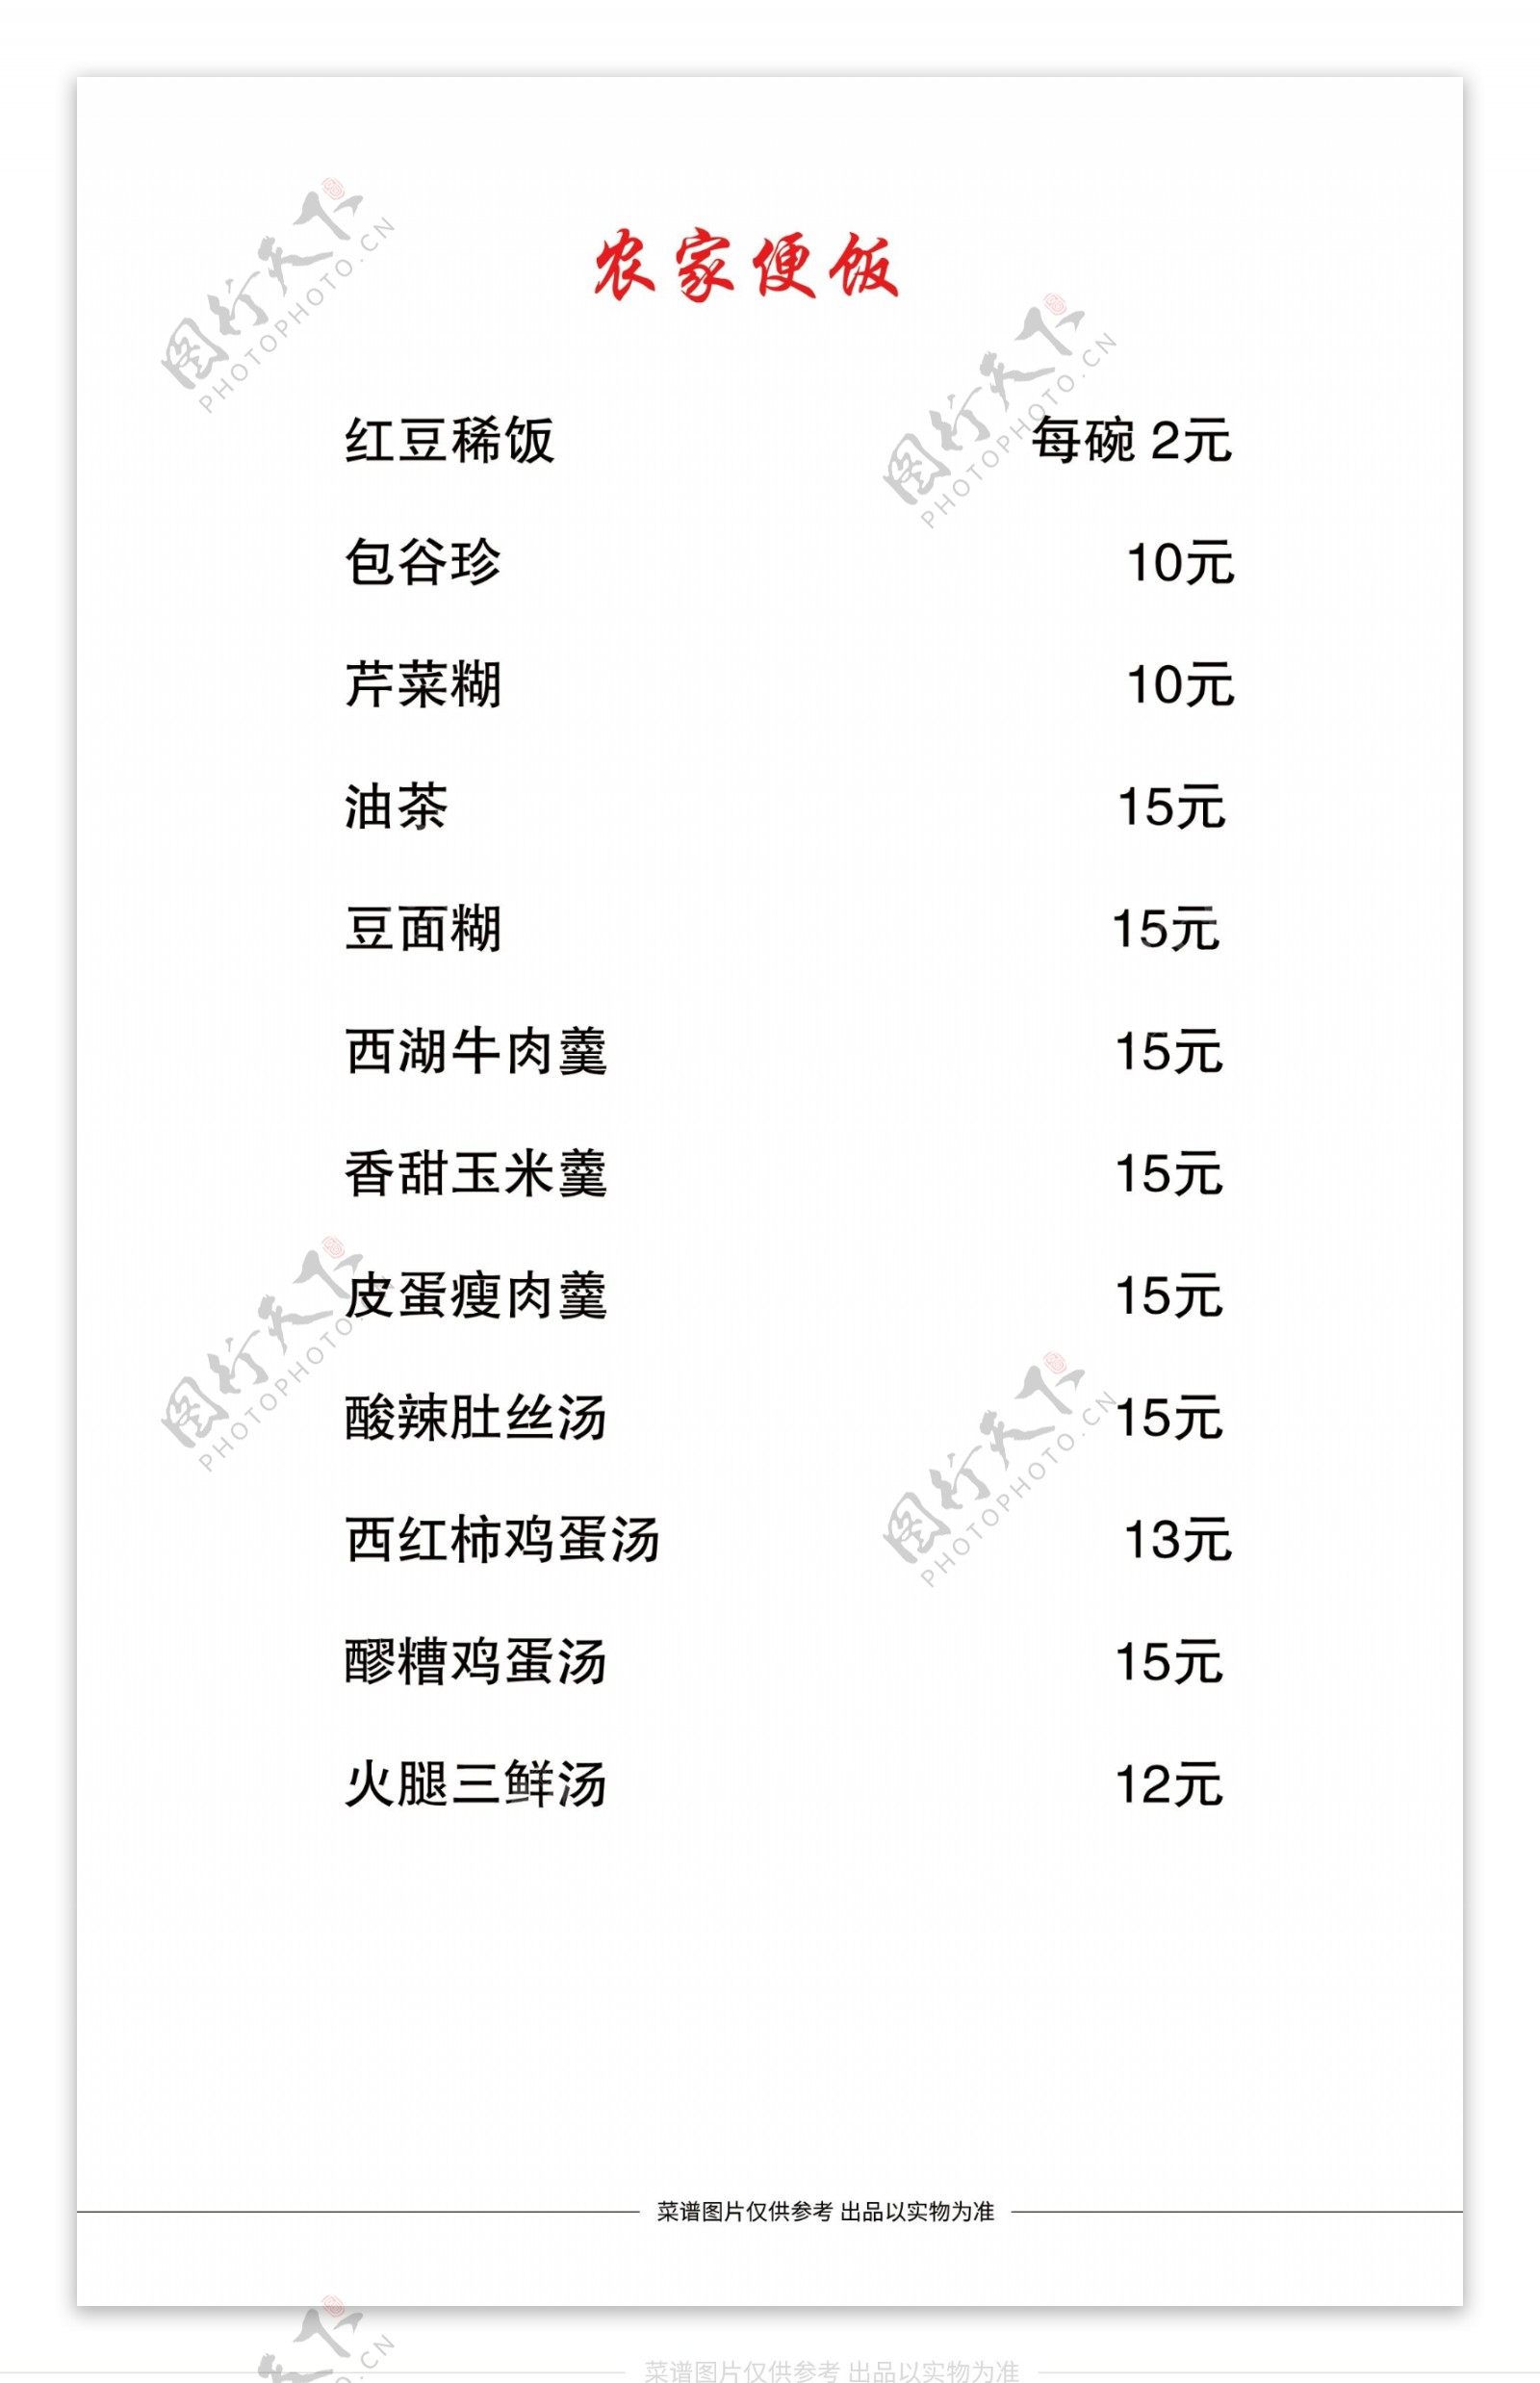 中式菜品菜单图片源文件